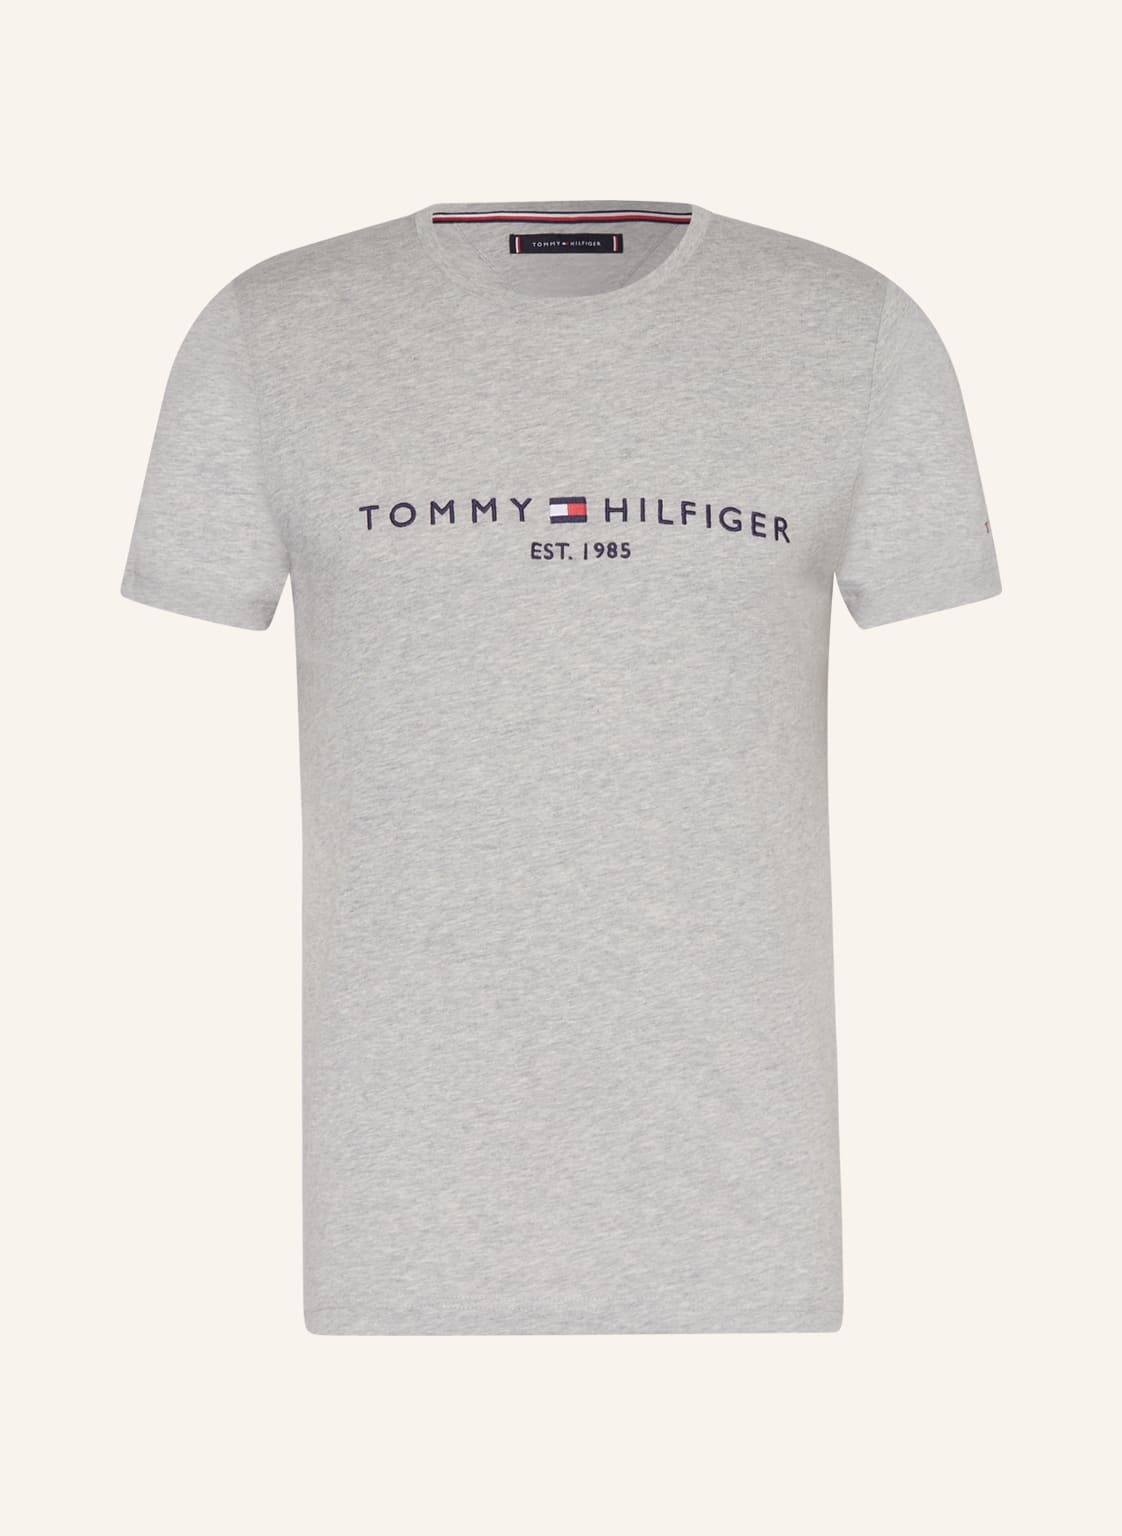 Tommy Hilfiger T-Shirt grau von Tommy Hilfiger